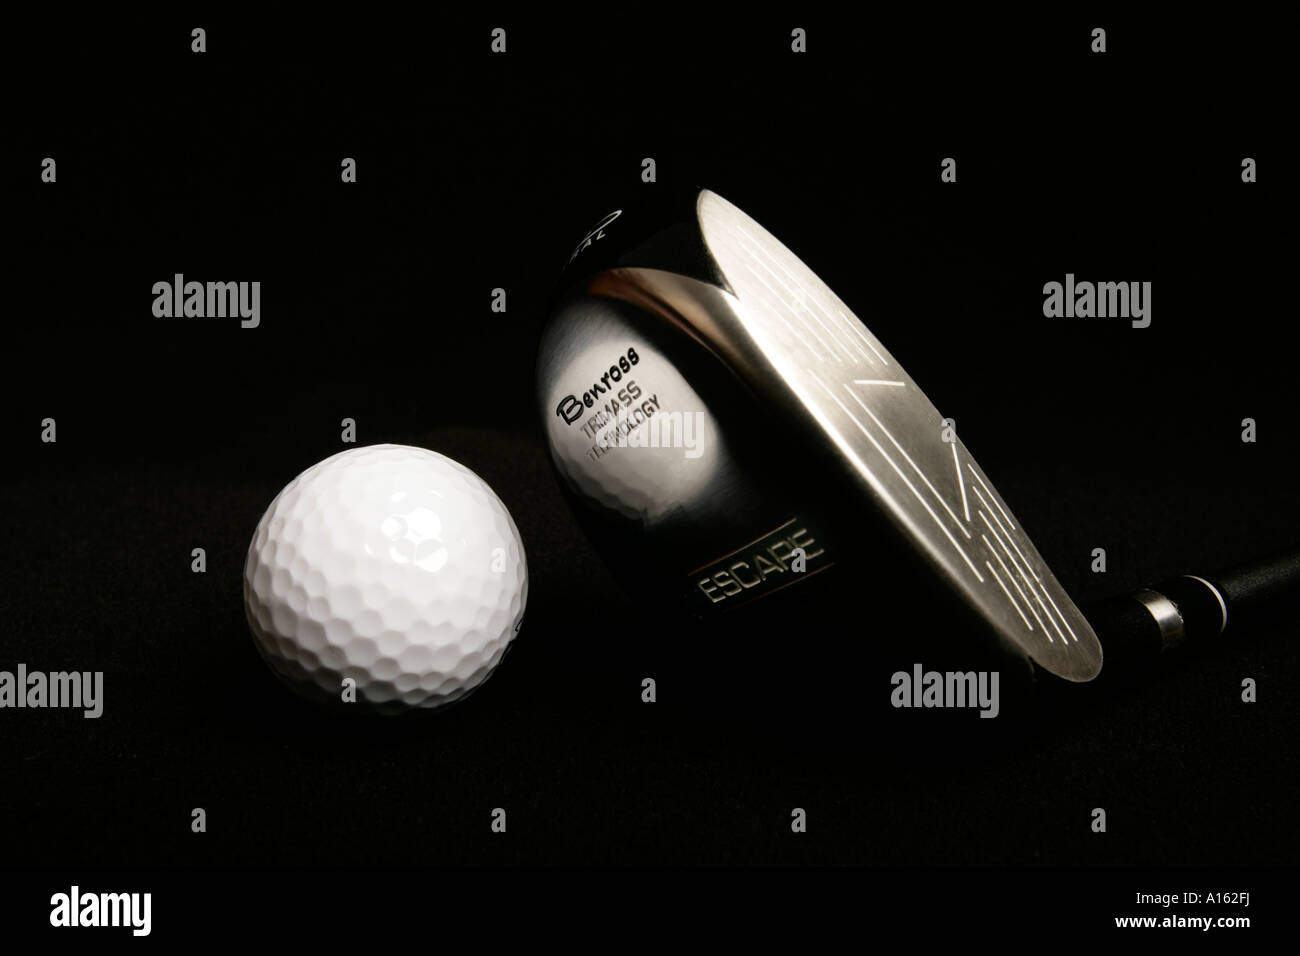 Benross Golf Club mit einem Ball Escape Eisen mit Trimass Technologie  Stockfotografie - Alamy